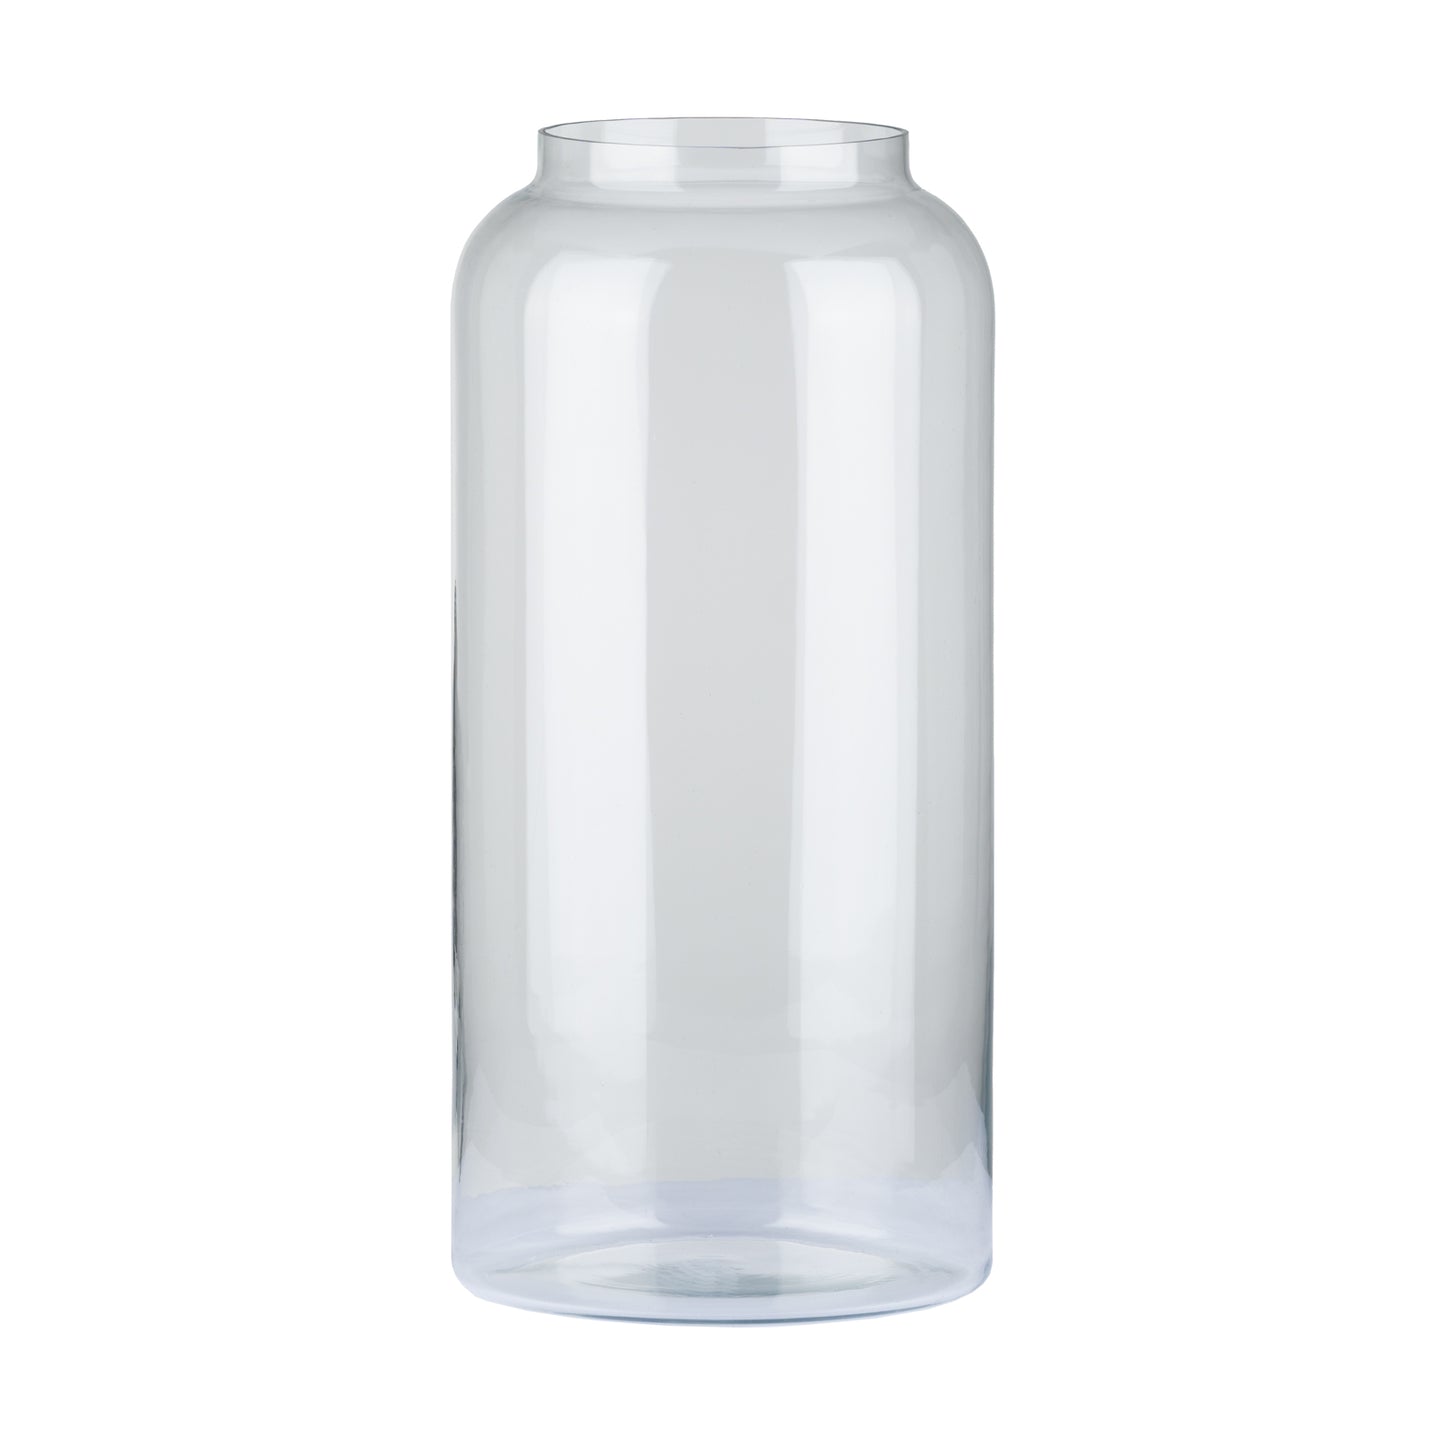 Large Apothecary Jar